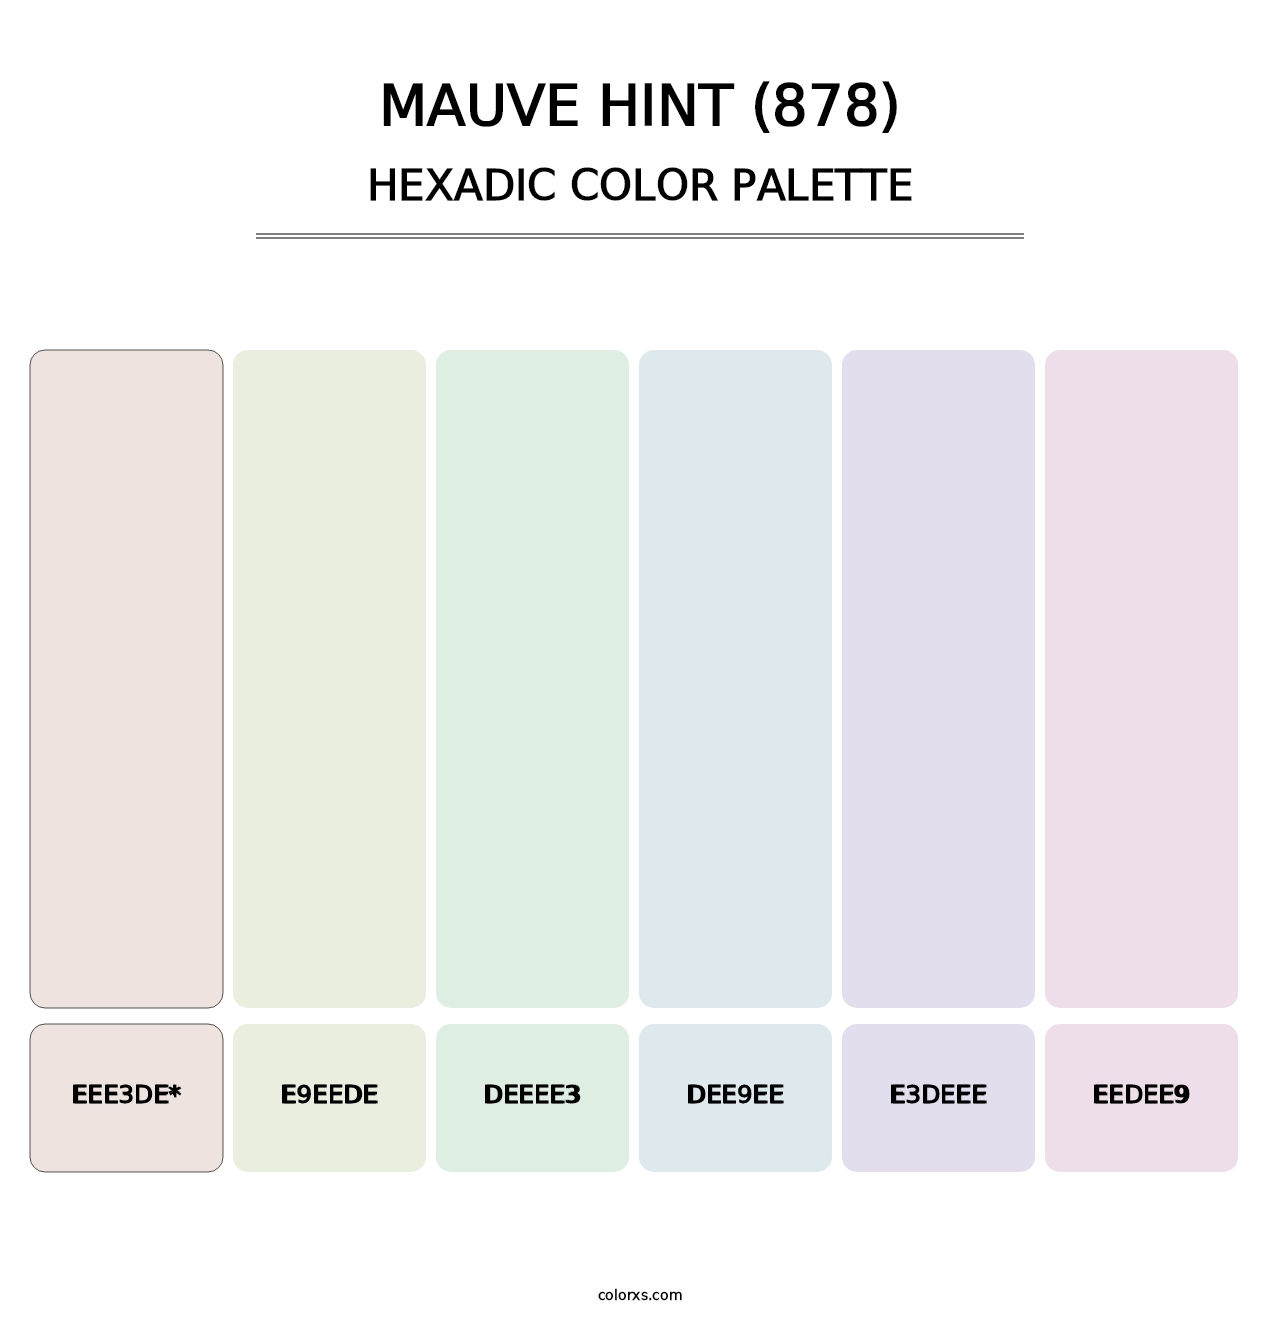 Mauve Hint (878) - Hexadic Color Palette